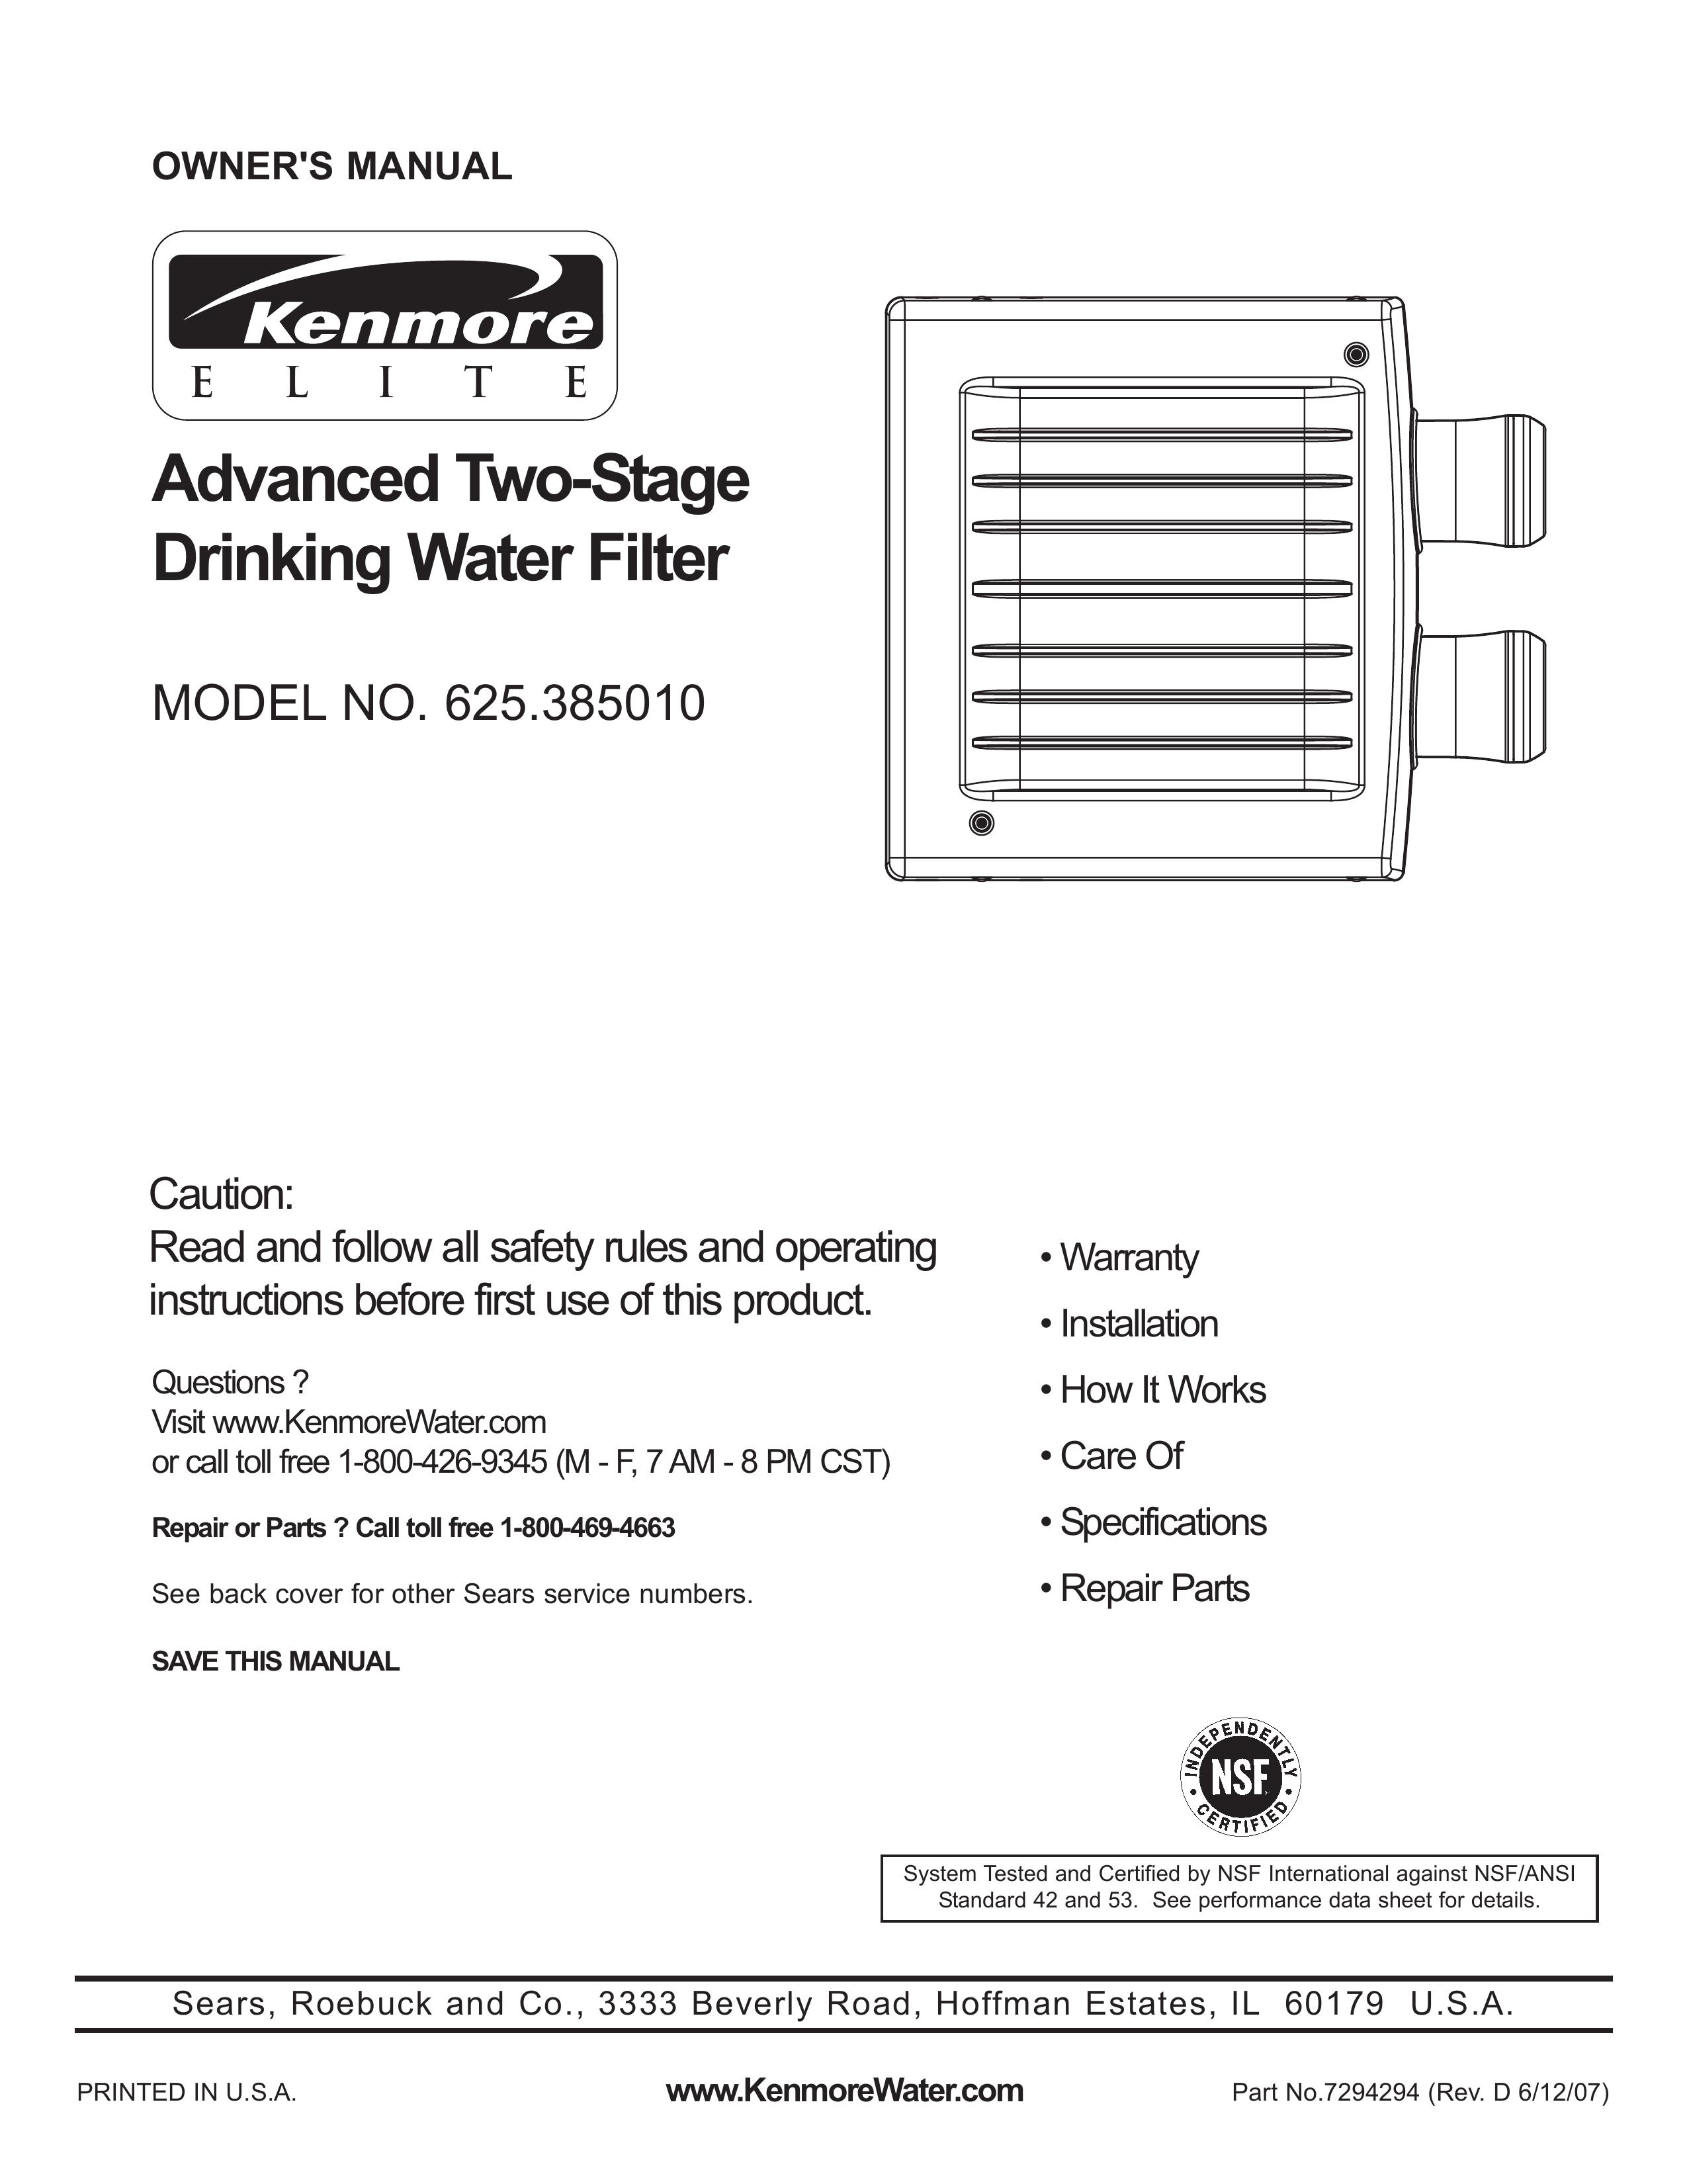 Kenmore 625.38501 Water Dispenser User Manual